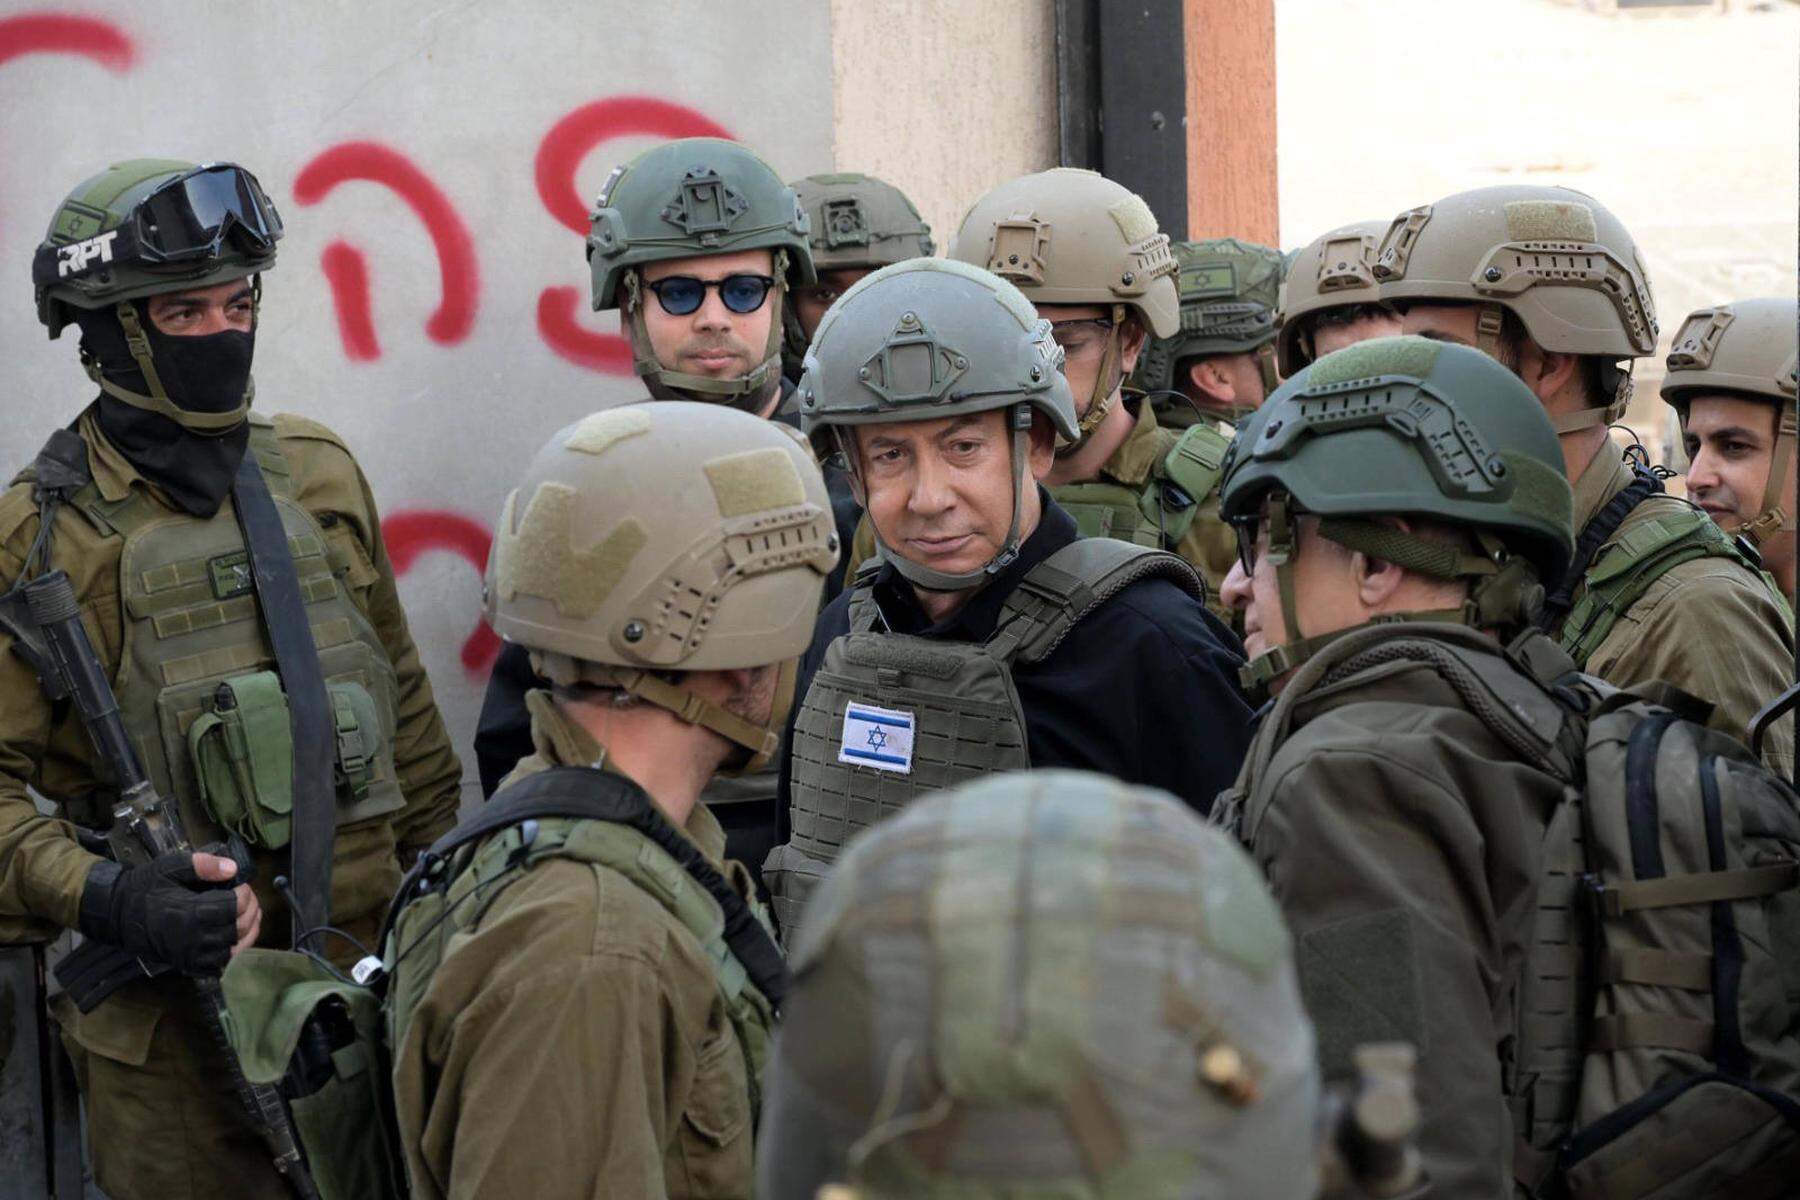 Soldaten verhaftet: Massive Unruhen in Israel 